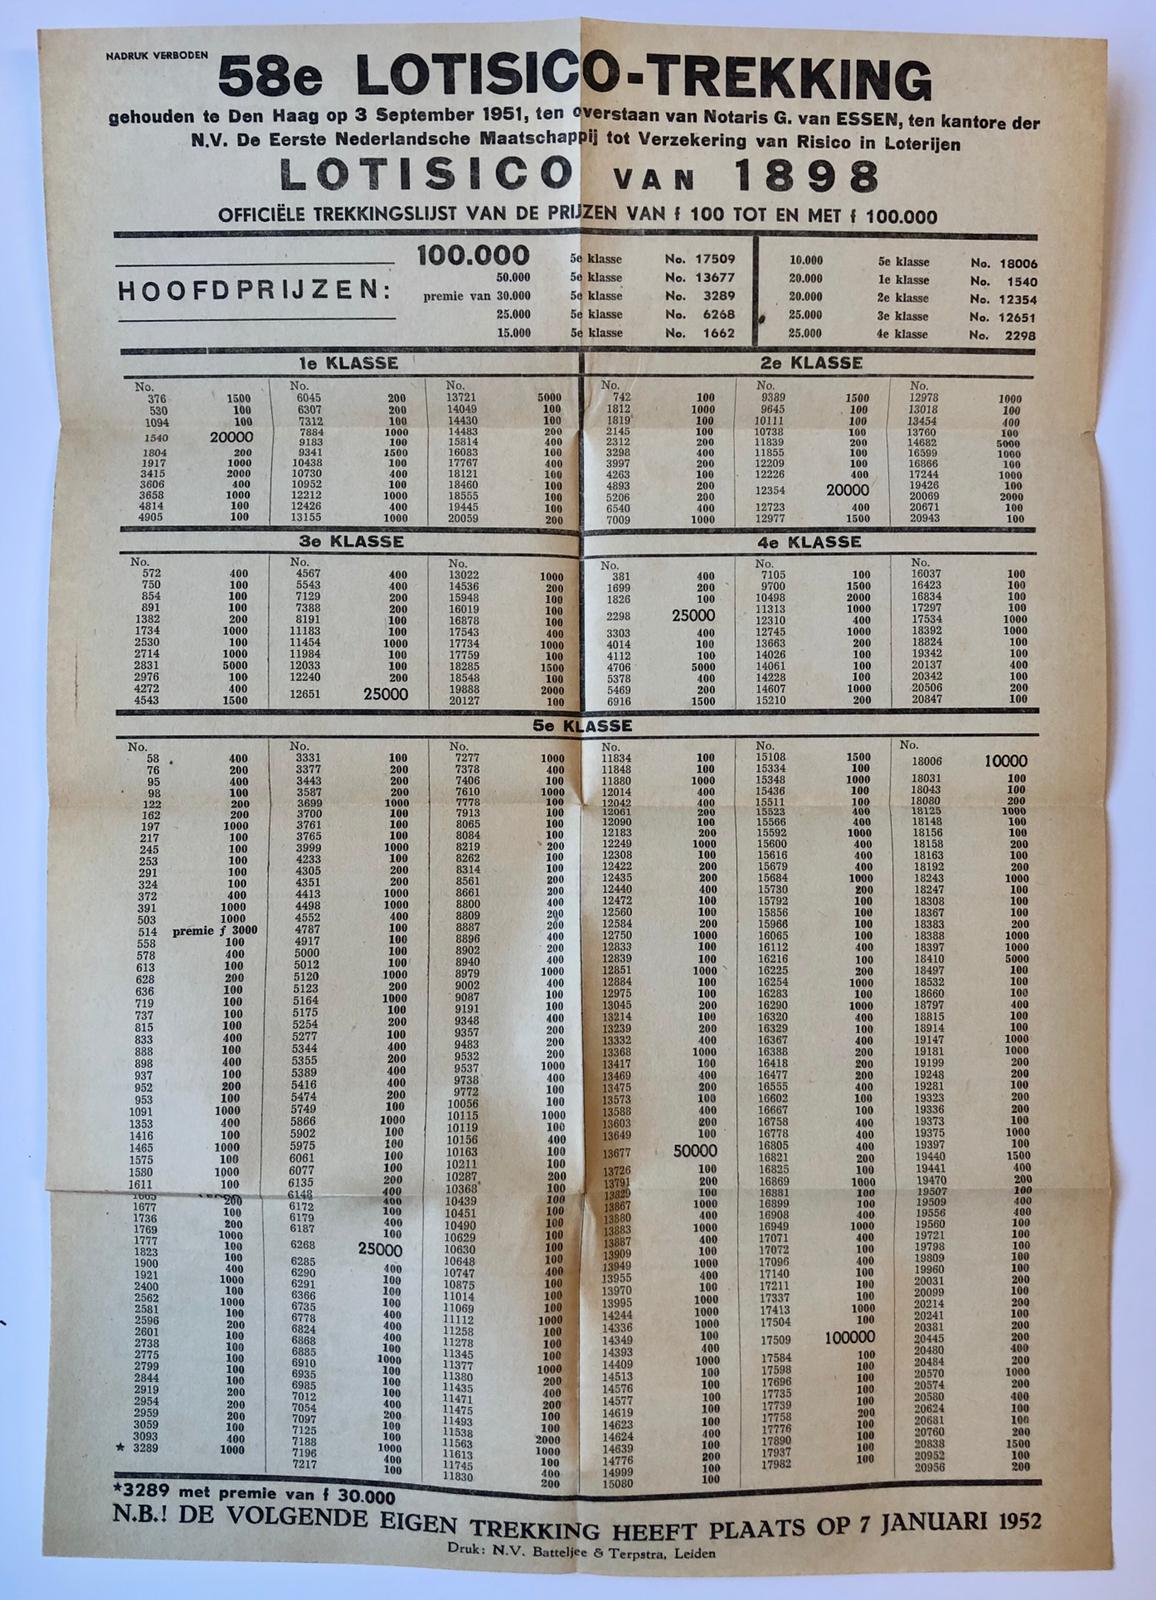 [Printed publication, Lottery, Loterij, 1951] ‘Lotisico Uw geluk’ brochure van de N.V. De Eerste Nederlandse Maatschappij tot verzekering van risico in loterijen, september 1951, 8°, 12 pag., gedrukt.